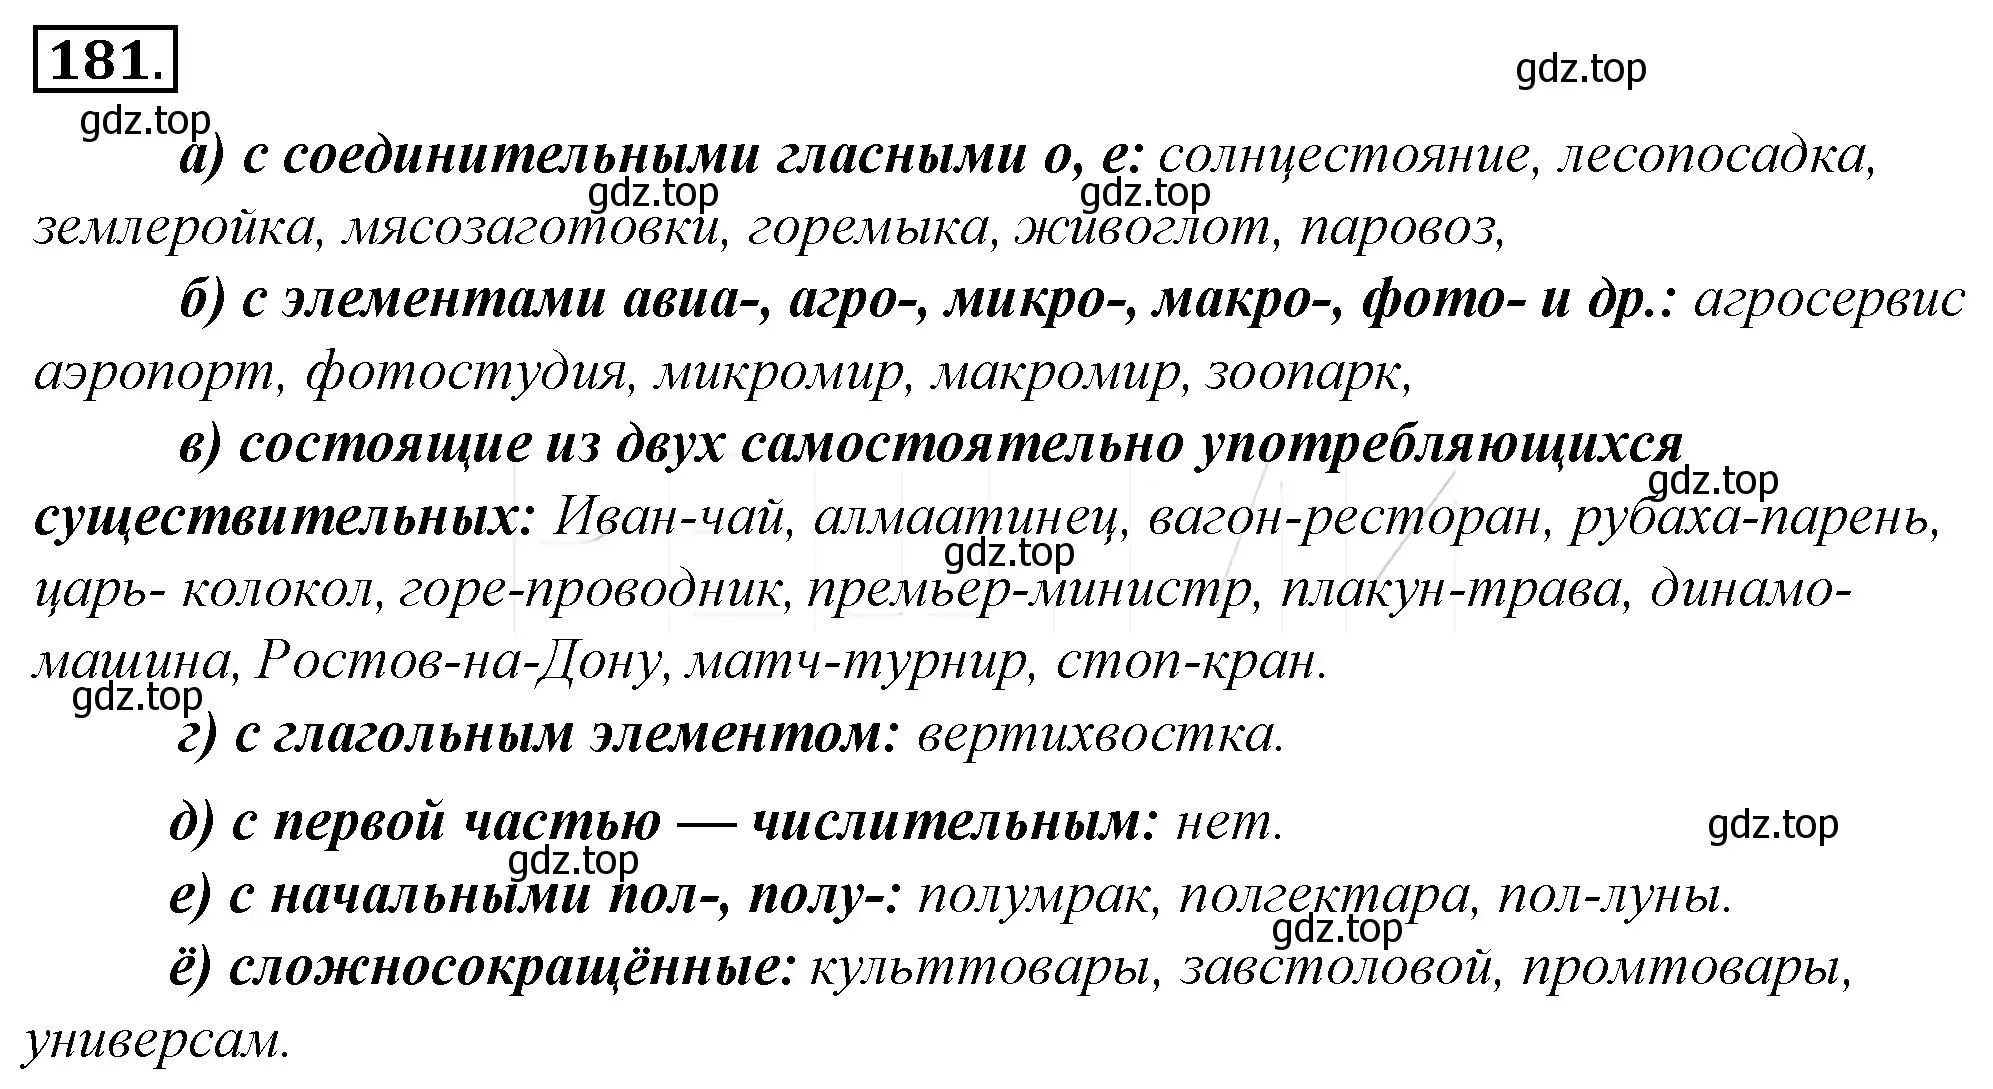 Решение 4. номер 205 (страница 189) гдз по русскому языку 10-11 класс Гольцова, Шамшин, учебник 1 часть